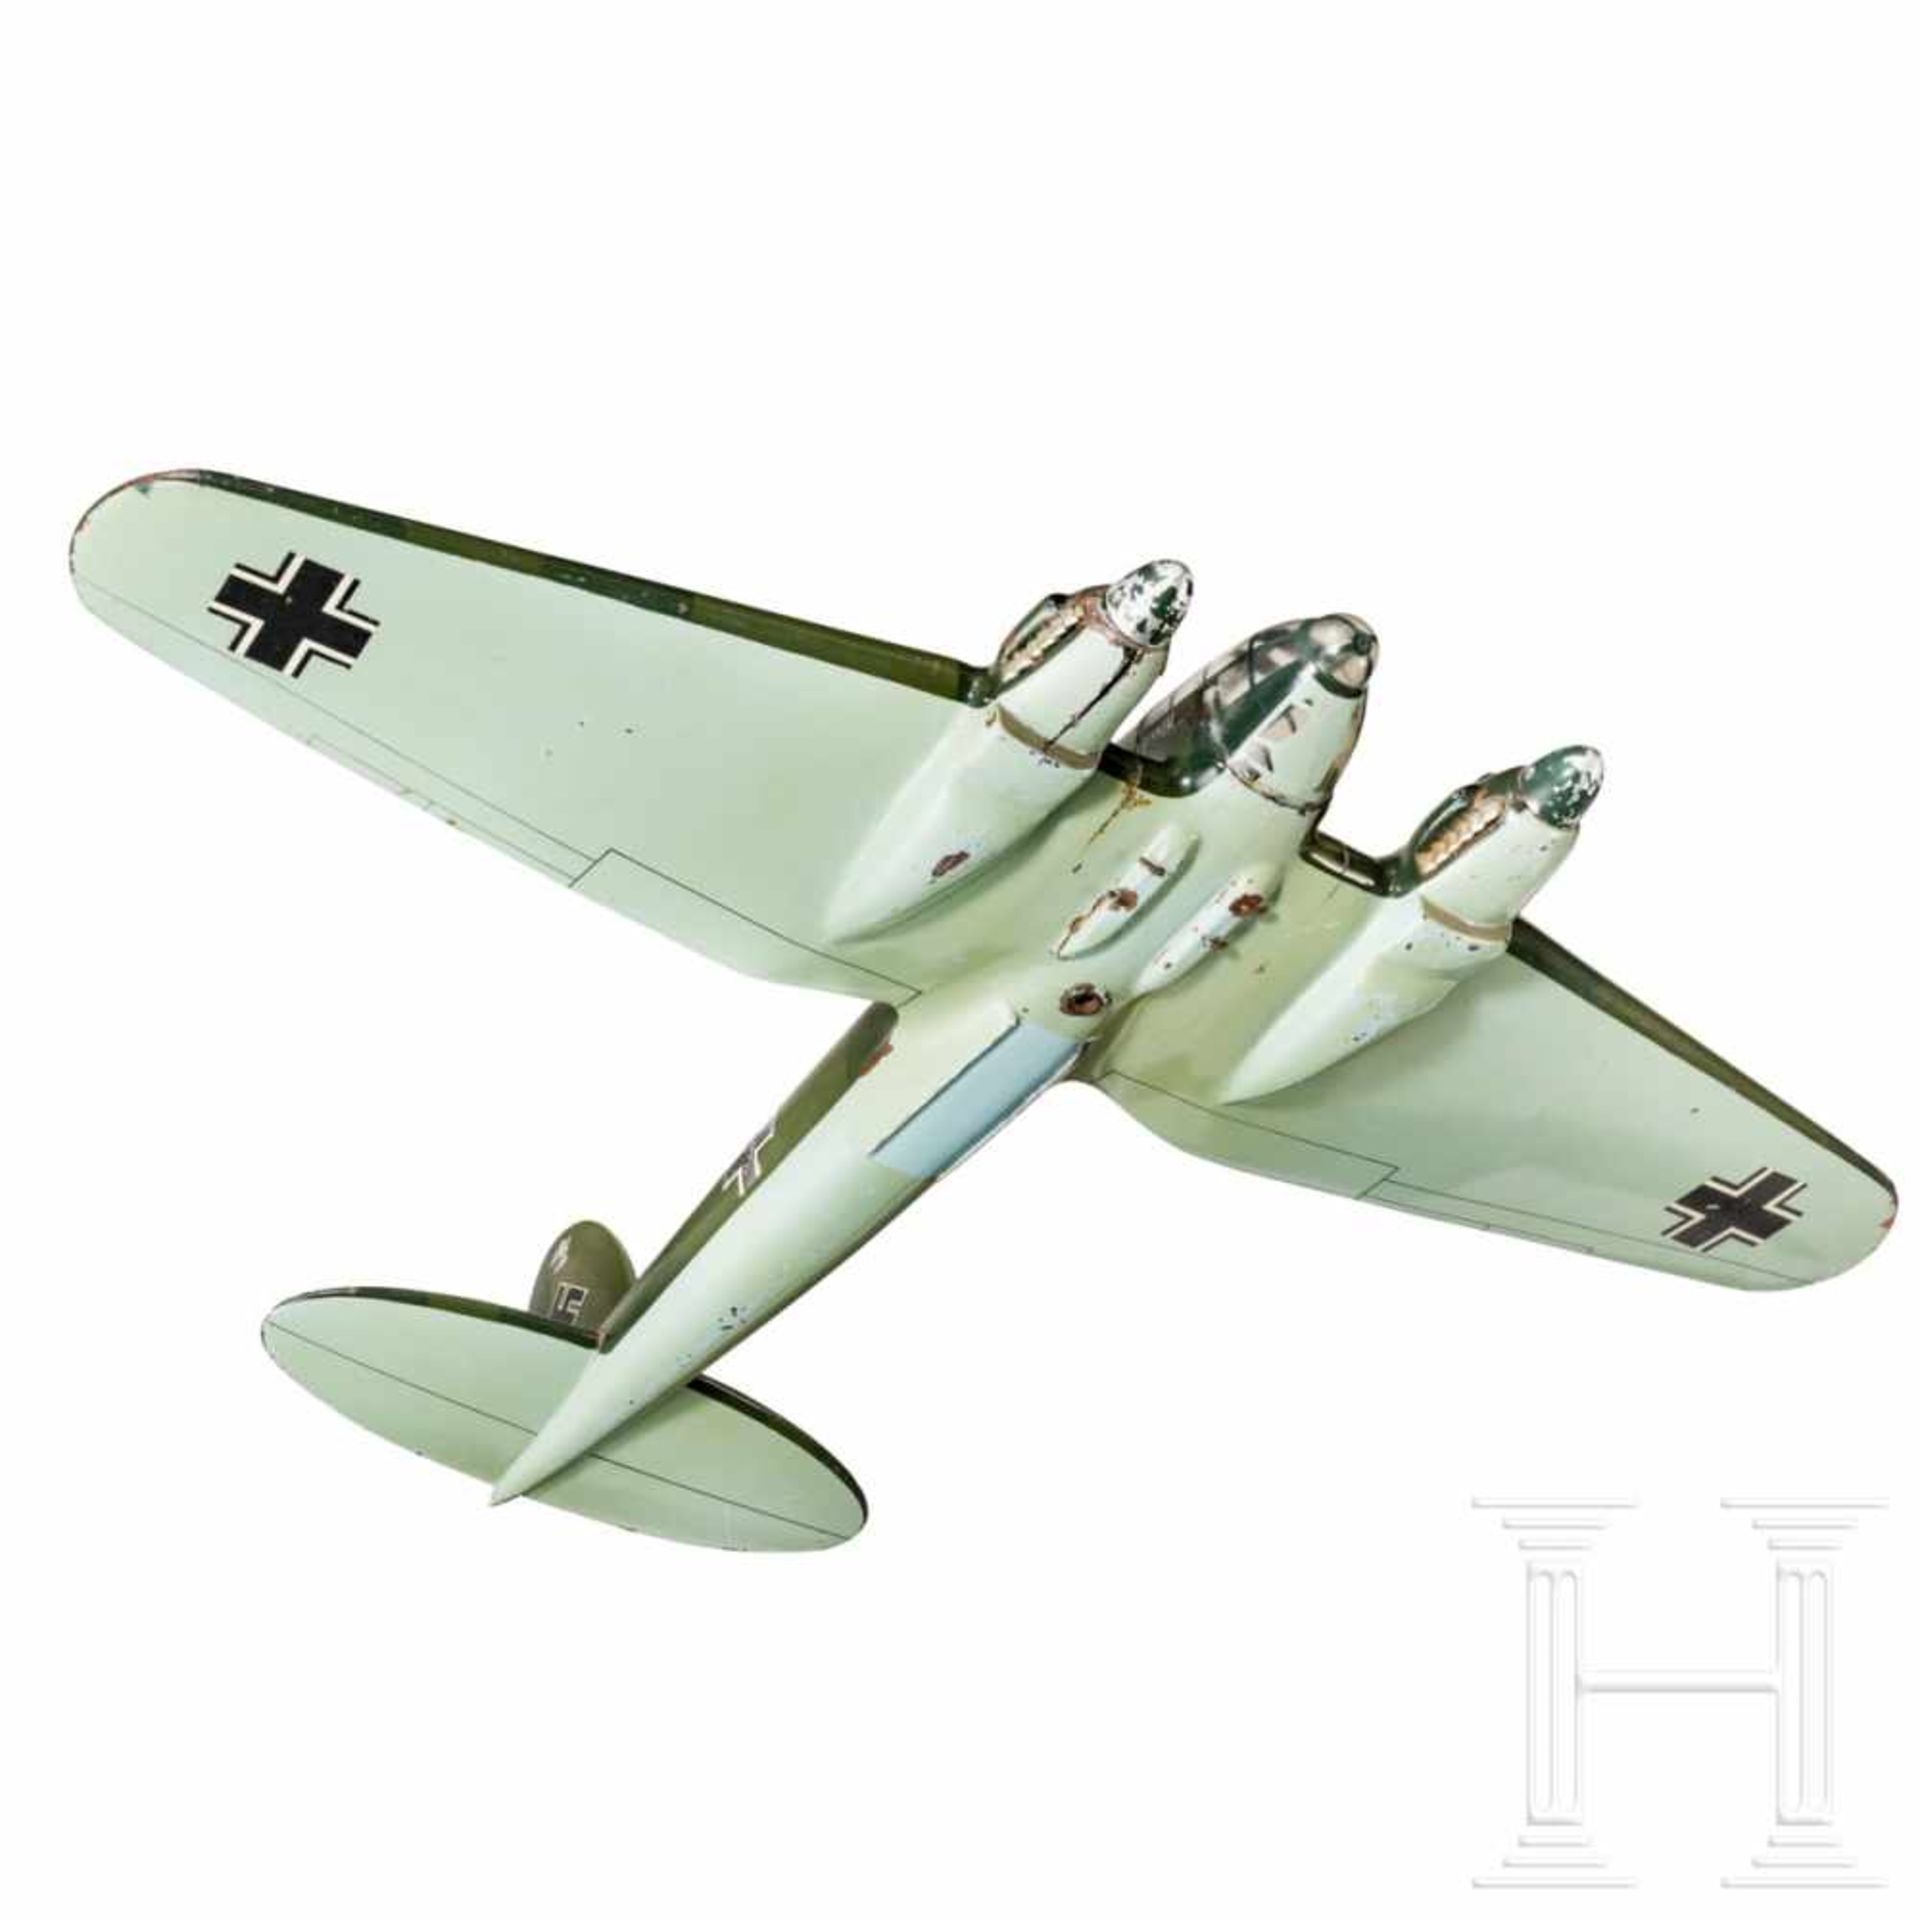 Werksmodell eines Heinkel He 111 Bombenflugzeuges - Bild 3 aus 6